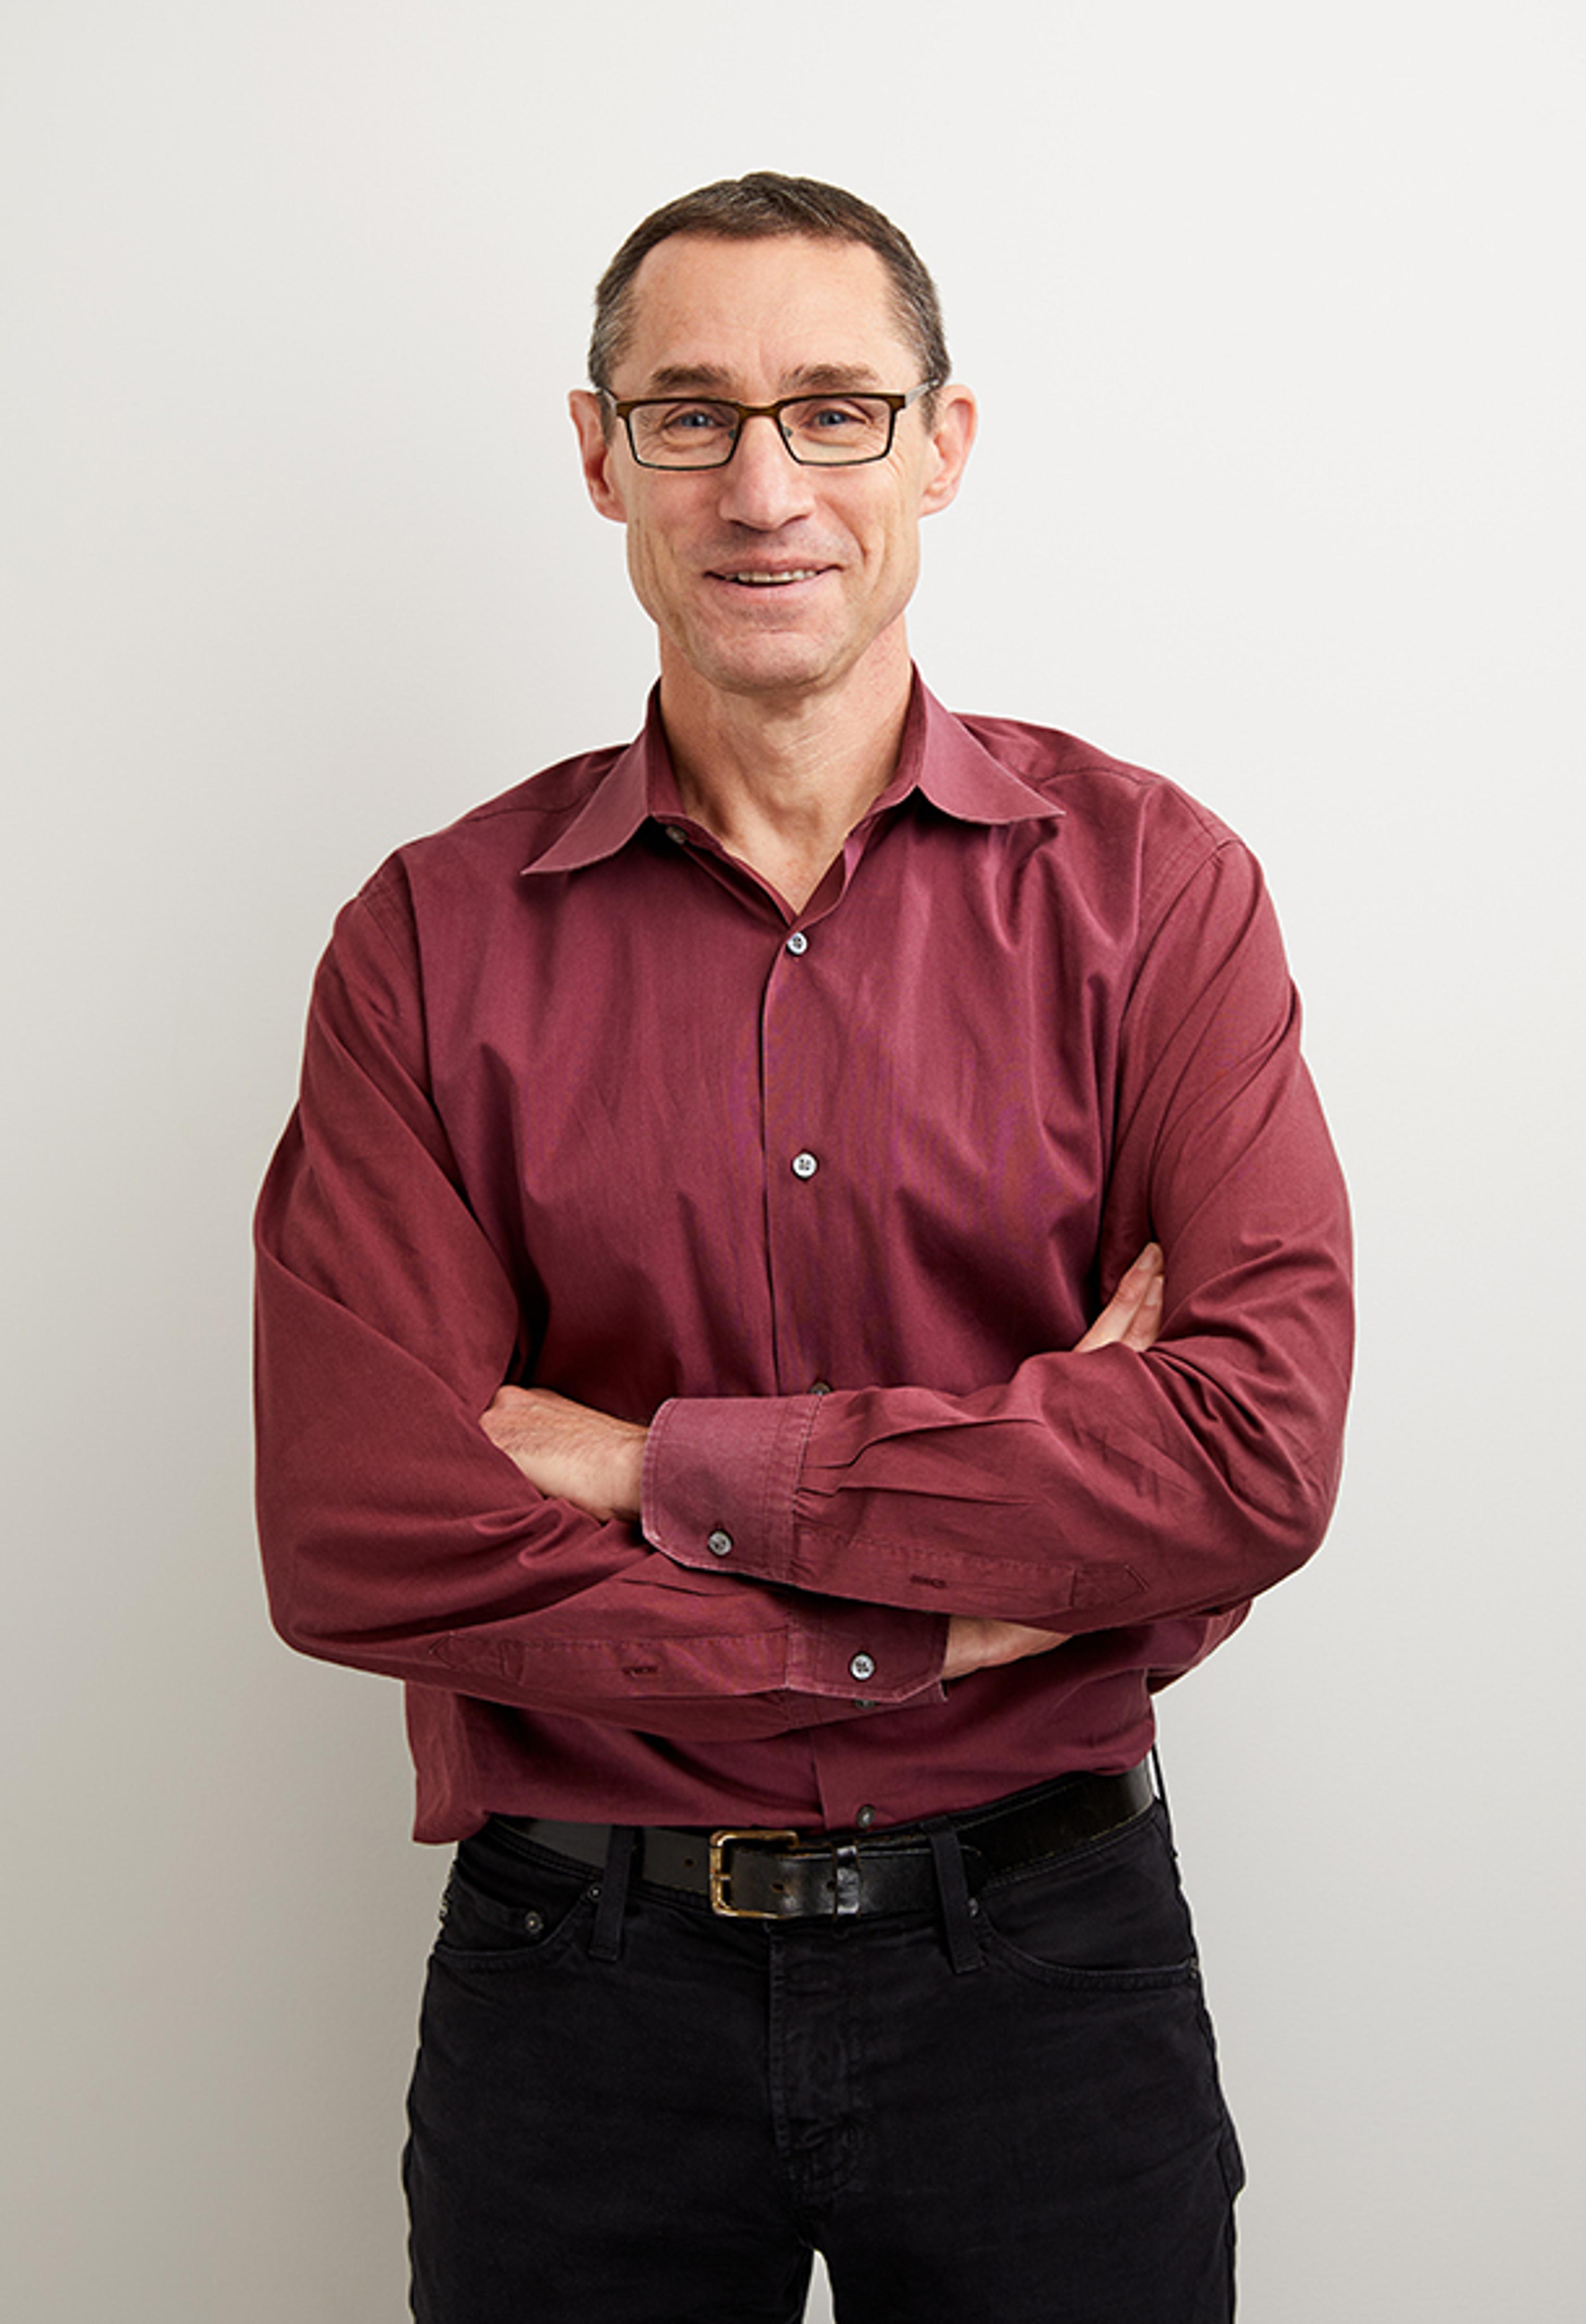 Chad Nusbaum, PhD